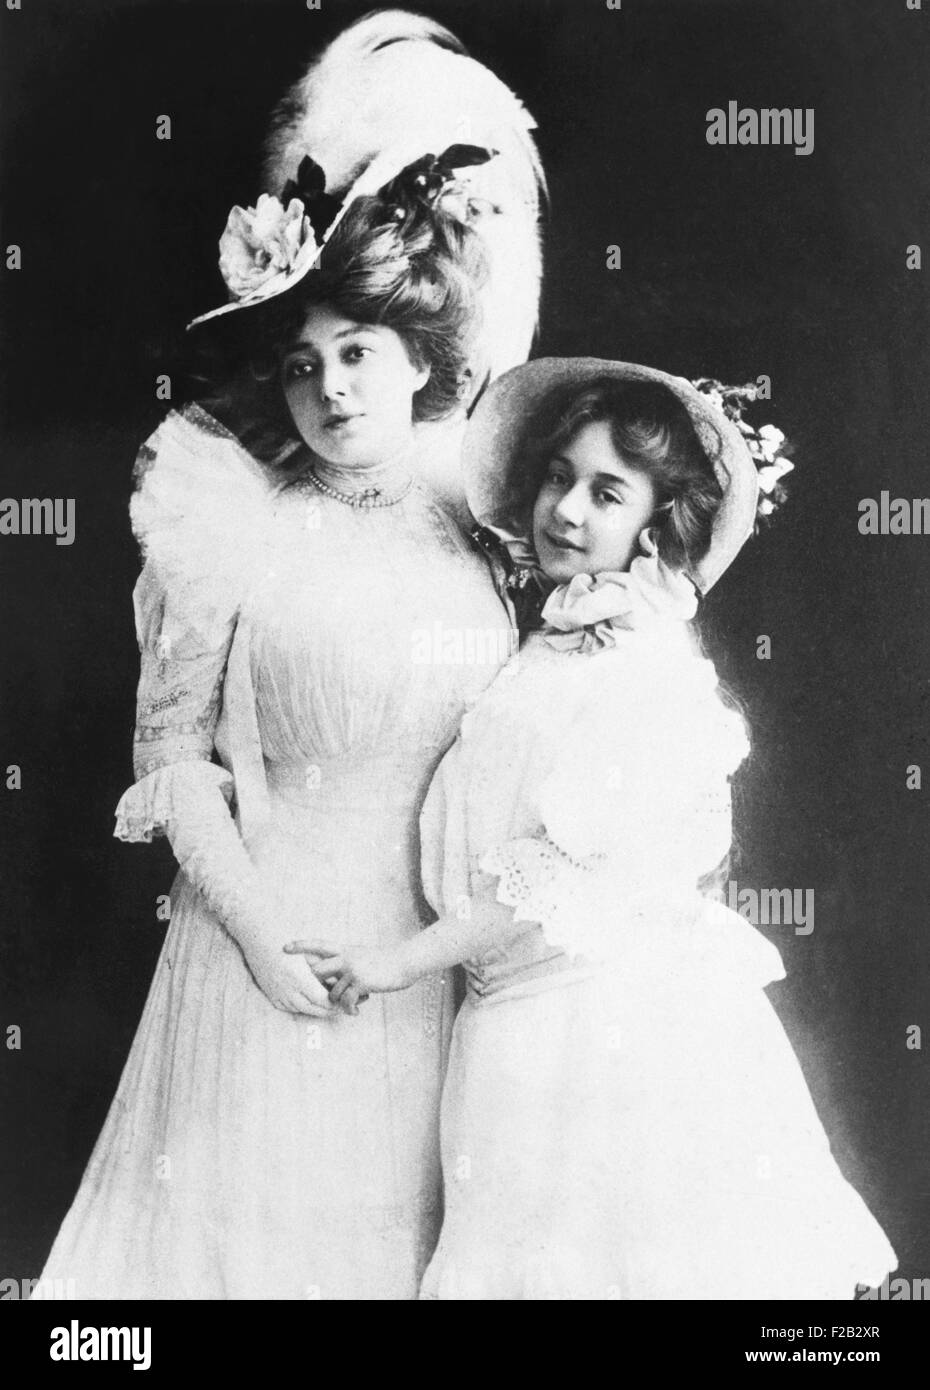 Berühmten Ziegfeld star Anna Held mit ihrer Tochter Liane Carrera, ca. 1907. Liane wurde 1895, während der Held der Ehe uruguayischen Playboy Maximo Carrera geboren. Liane wurde eine Schauspielerin und Produzentin, und wurde manchmal als Anna Held, Jr. (CSU 2015 7 303) in Rechnung gestellt Stockfoto